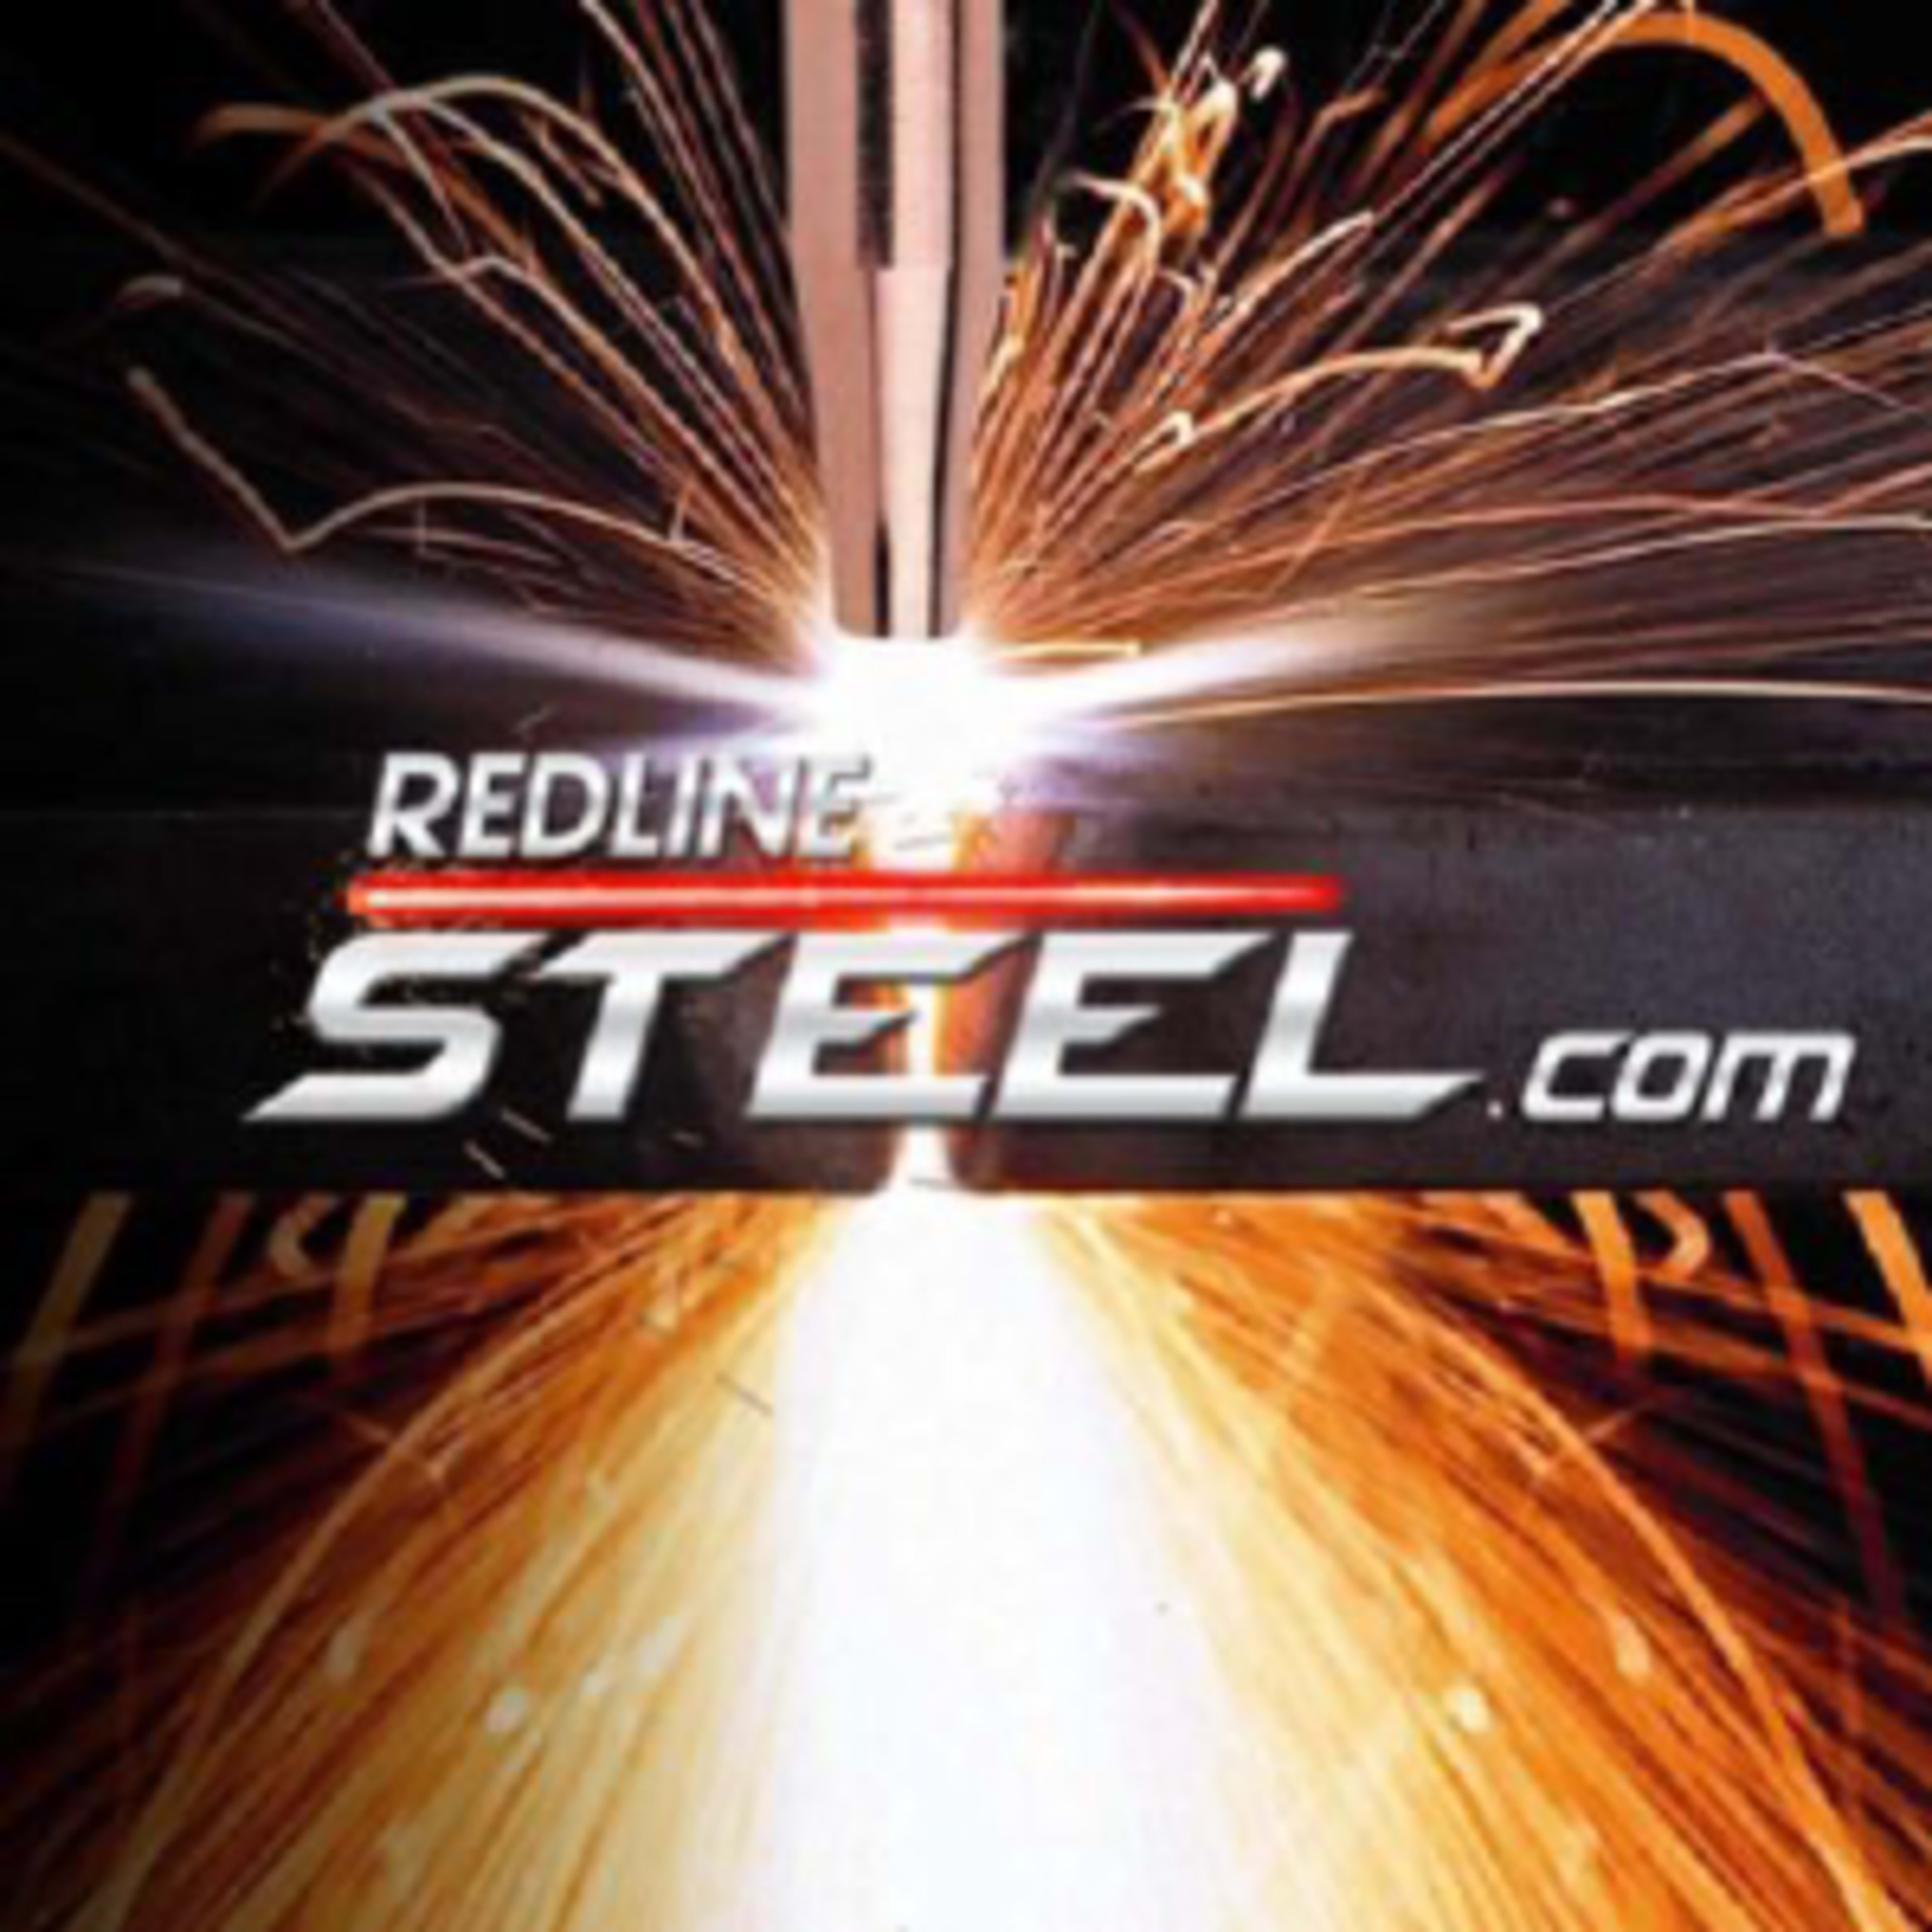 Redline Steel Code